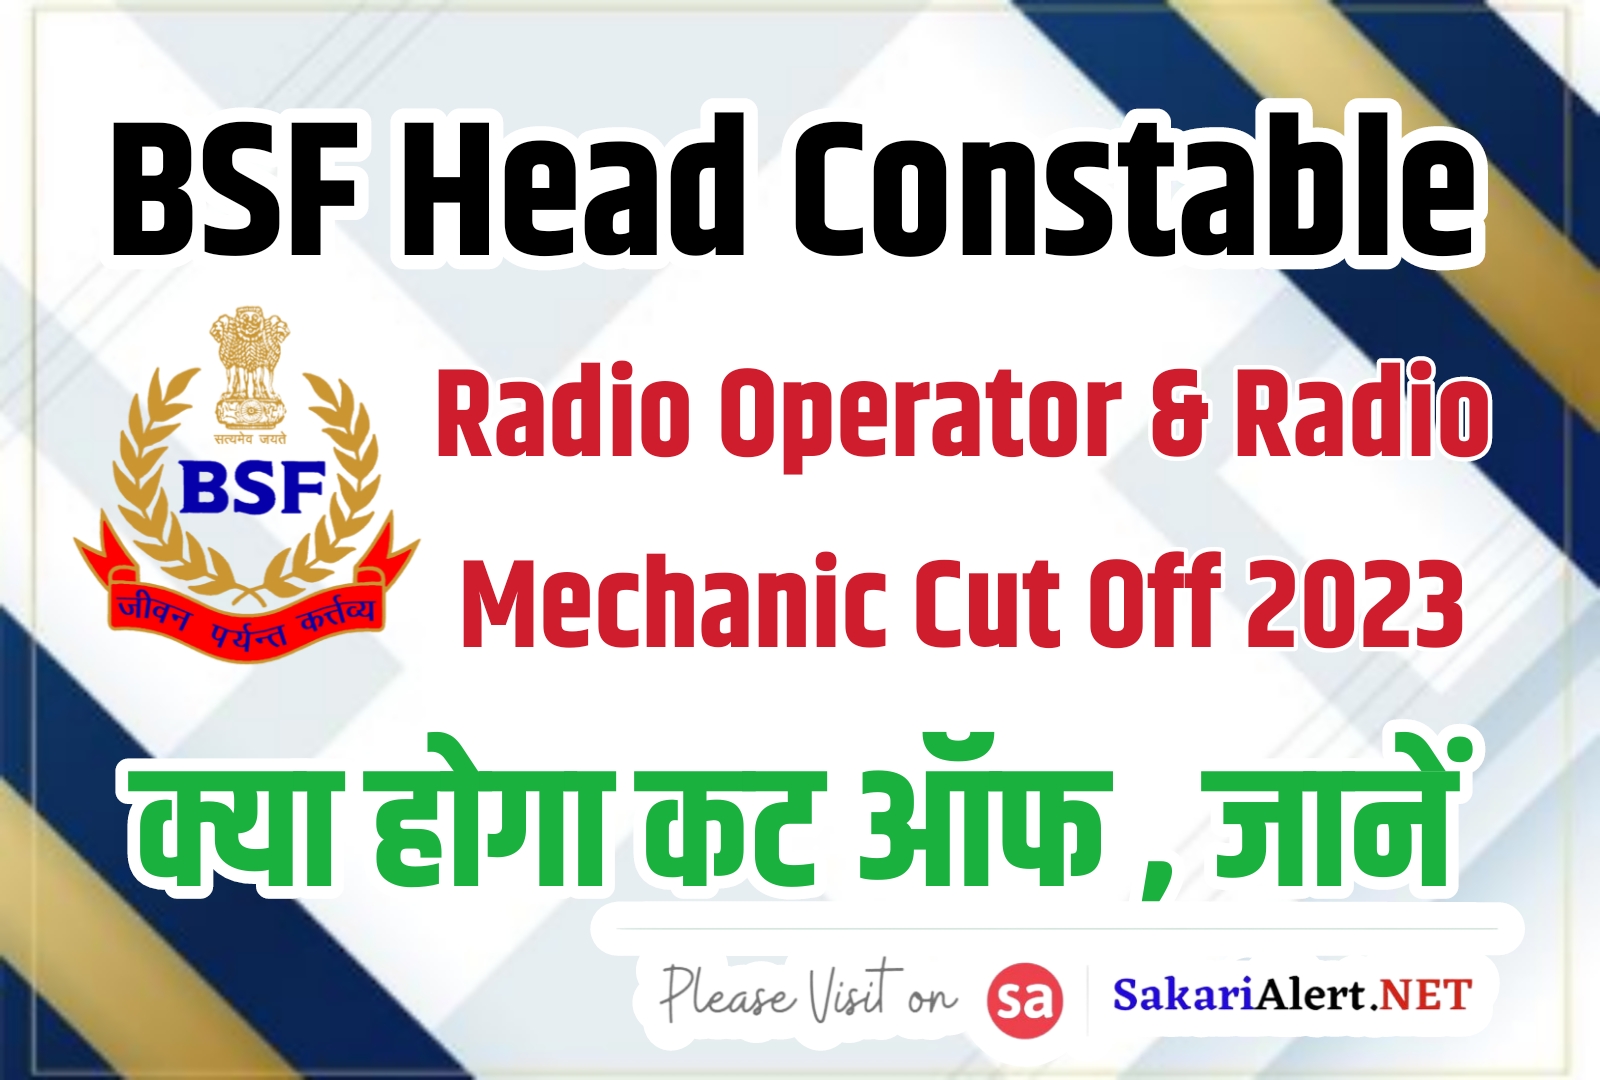 BSF Head Constable RO RM Cut Off 2023 | बीएसएफ हेड कांस्टेबल आरओ आरएम कट ऑफ क्या होगा?, जानें कैटेगरी के अनुसार कटऑफ